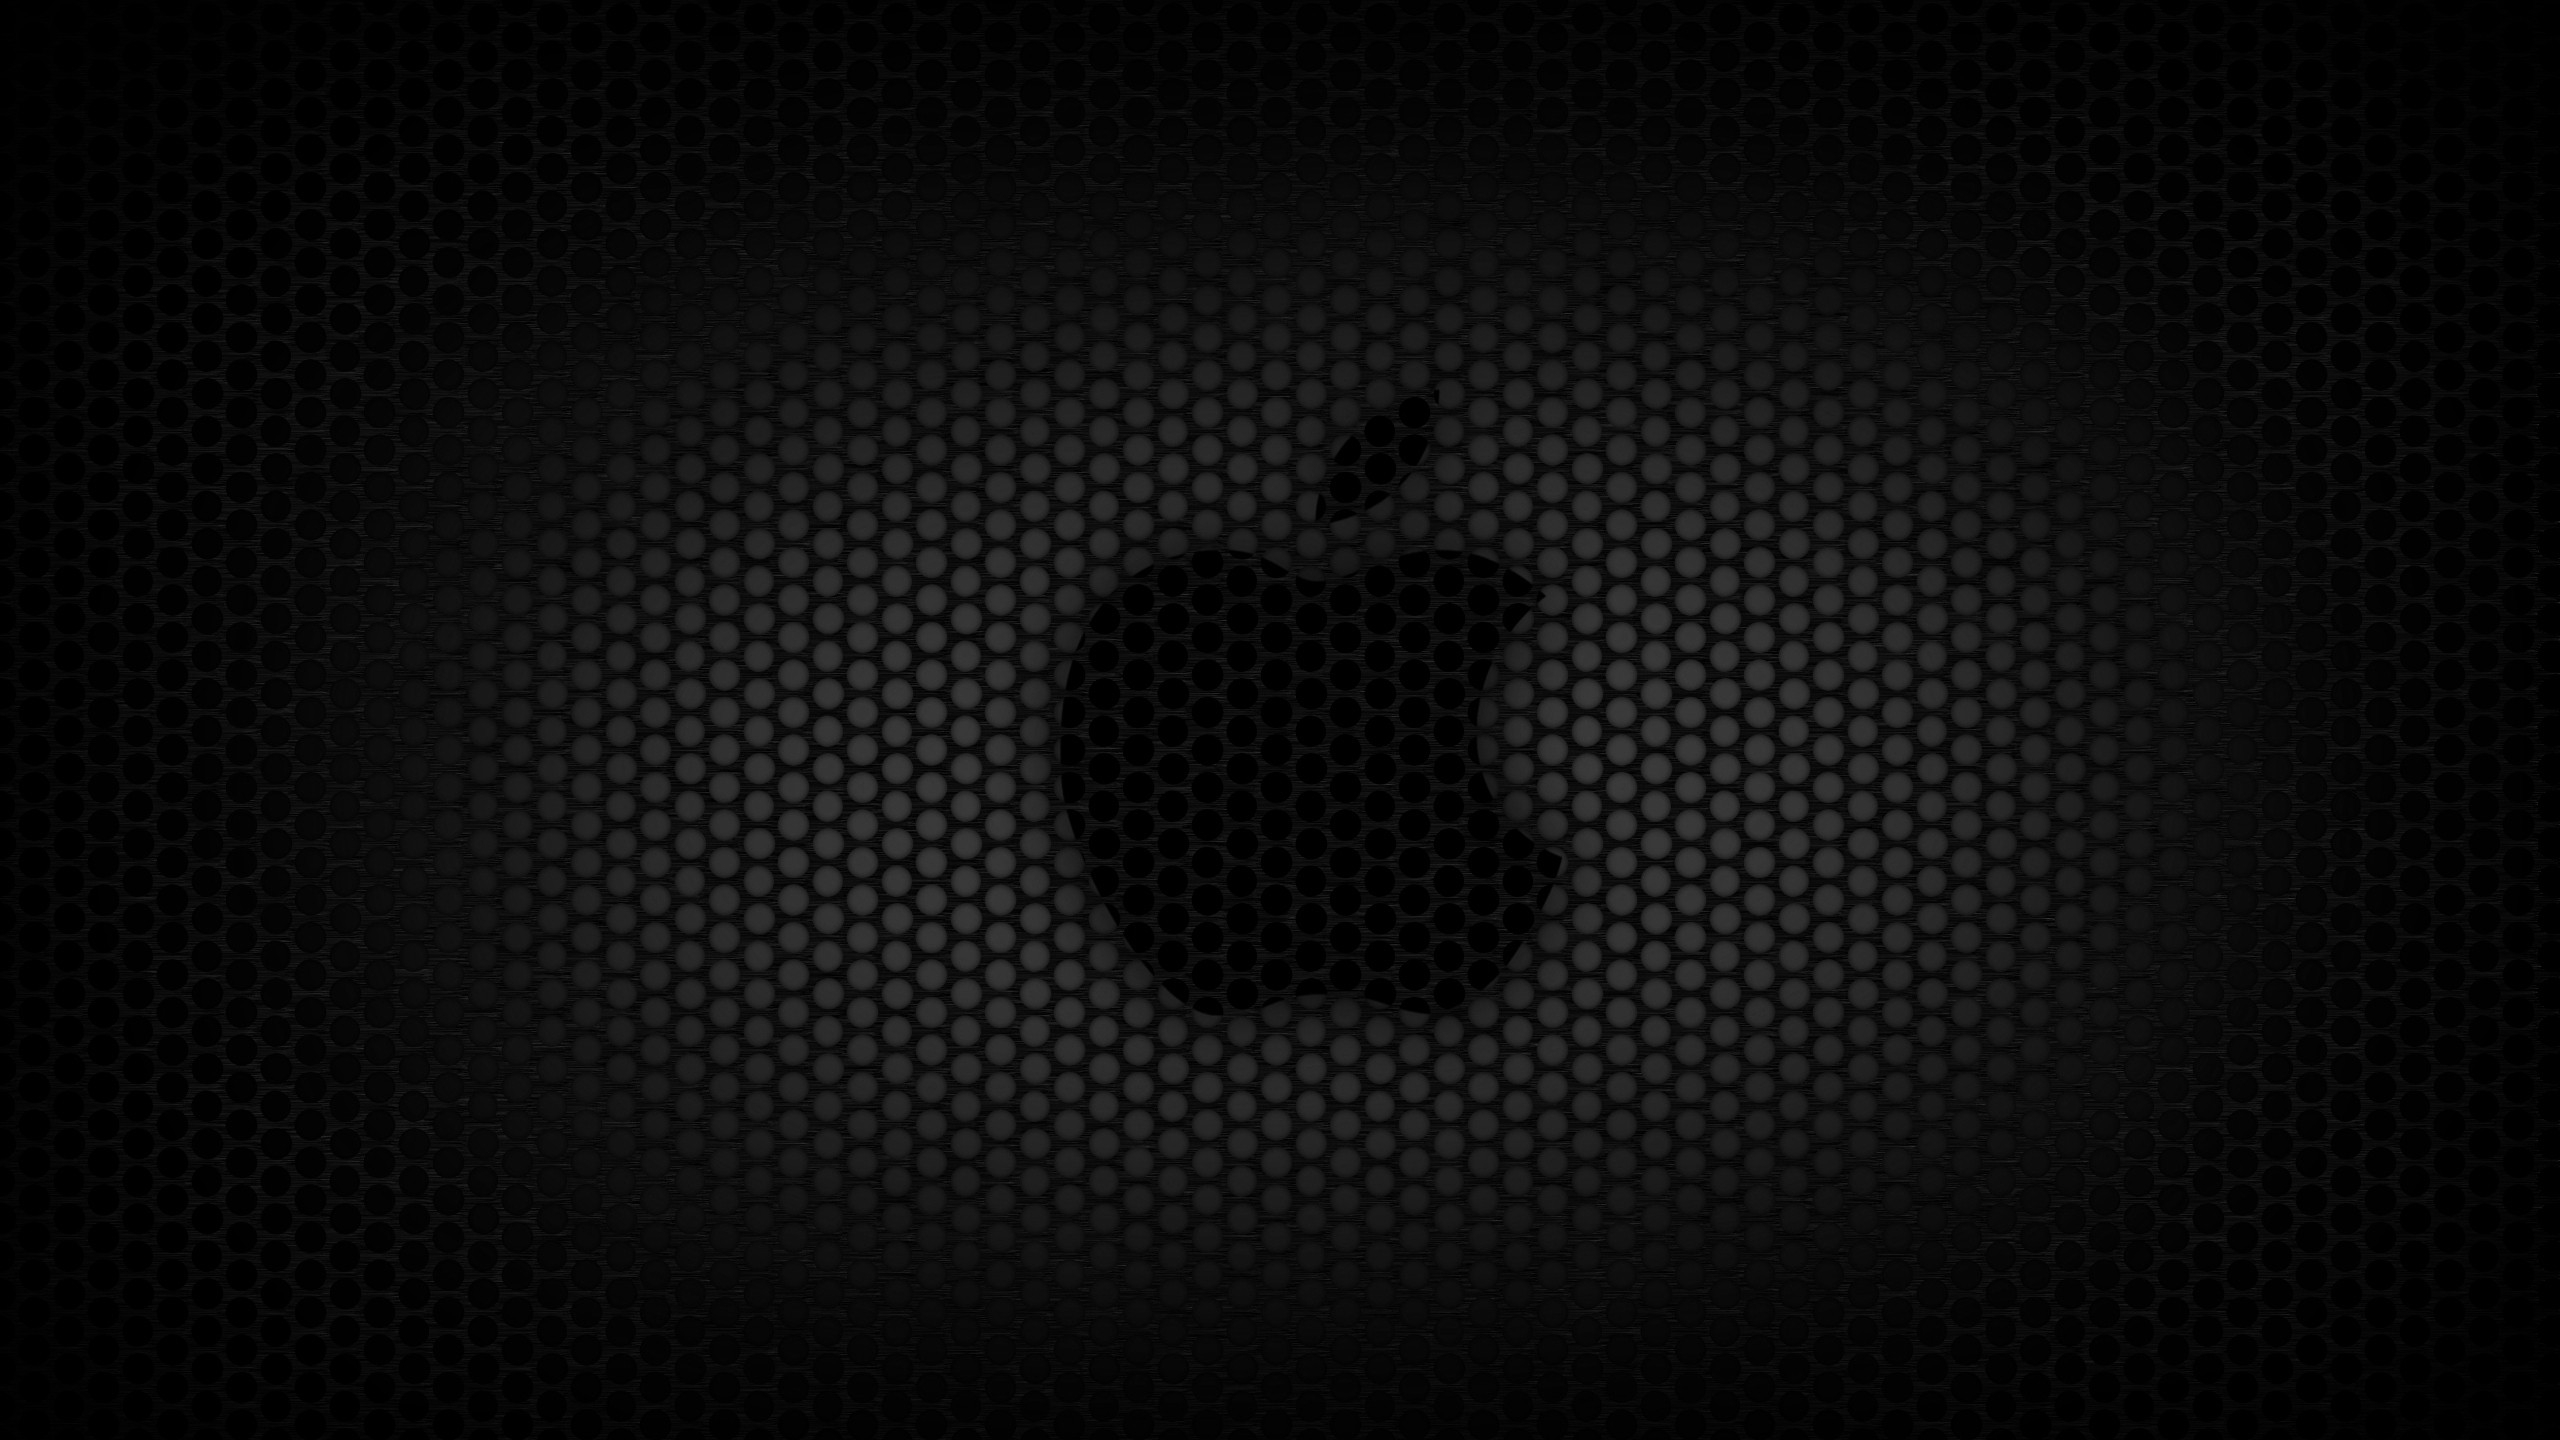 Логотип mac на темном фоне